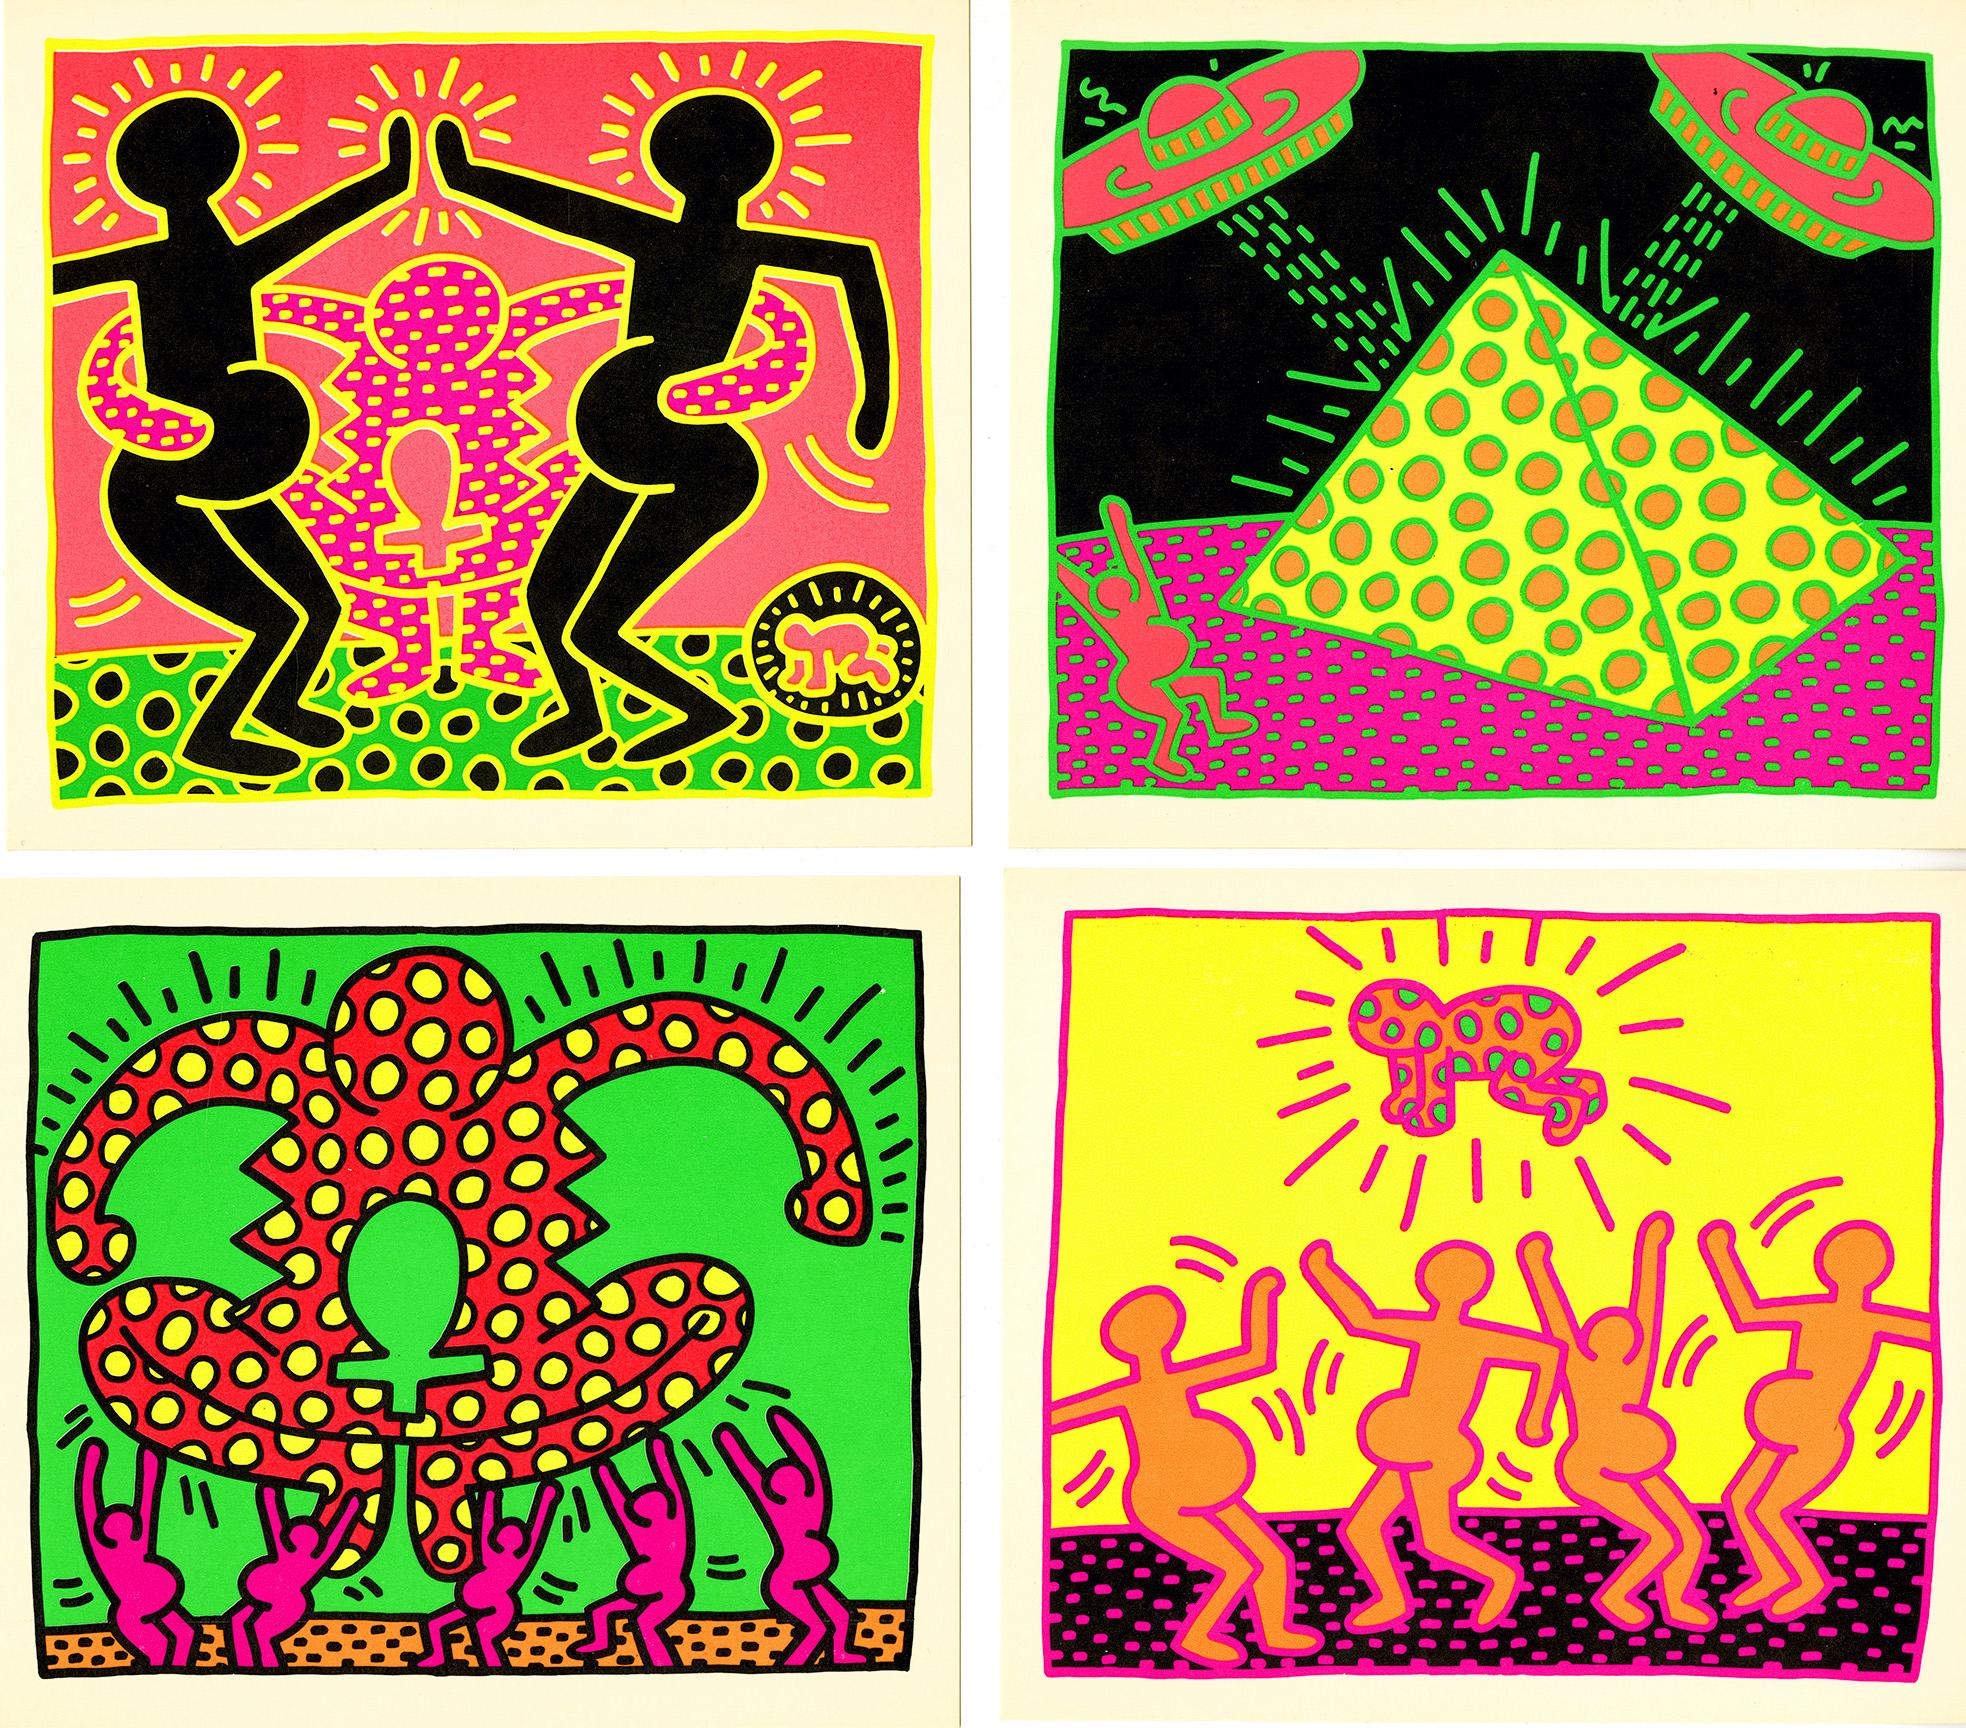 Keith Haring, Tony Shafrazi 1983 :
Cet ensemble de cinq cartes promotionnelles, accompagnées de la carte d'invitation et de l'enveloppe originales de Shafrazi, a été publié pour promouvoir le portfolio de cinq sérigraphies de Keith Haring, "The